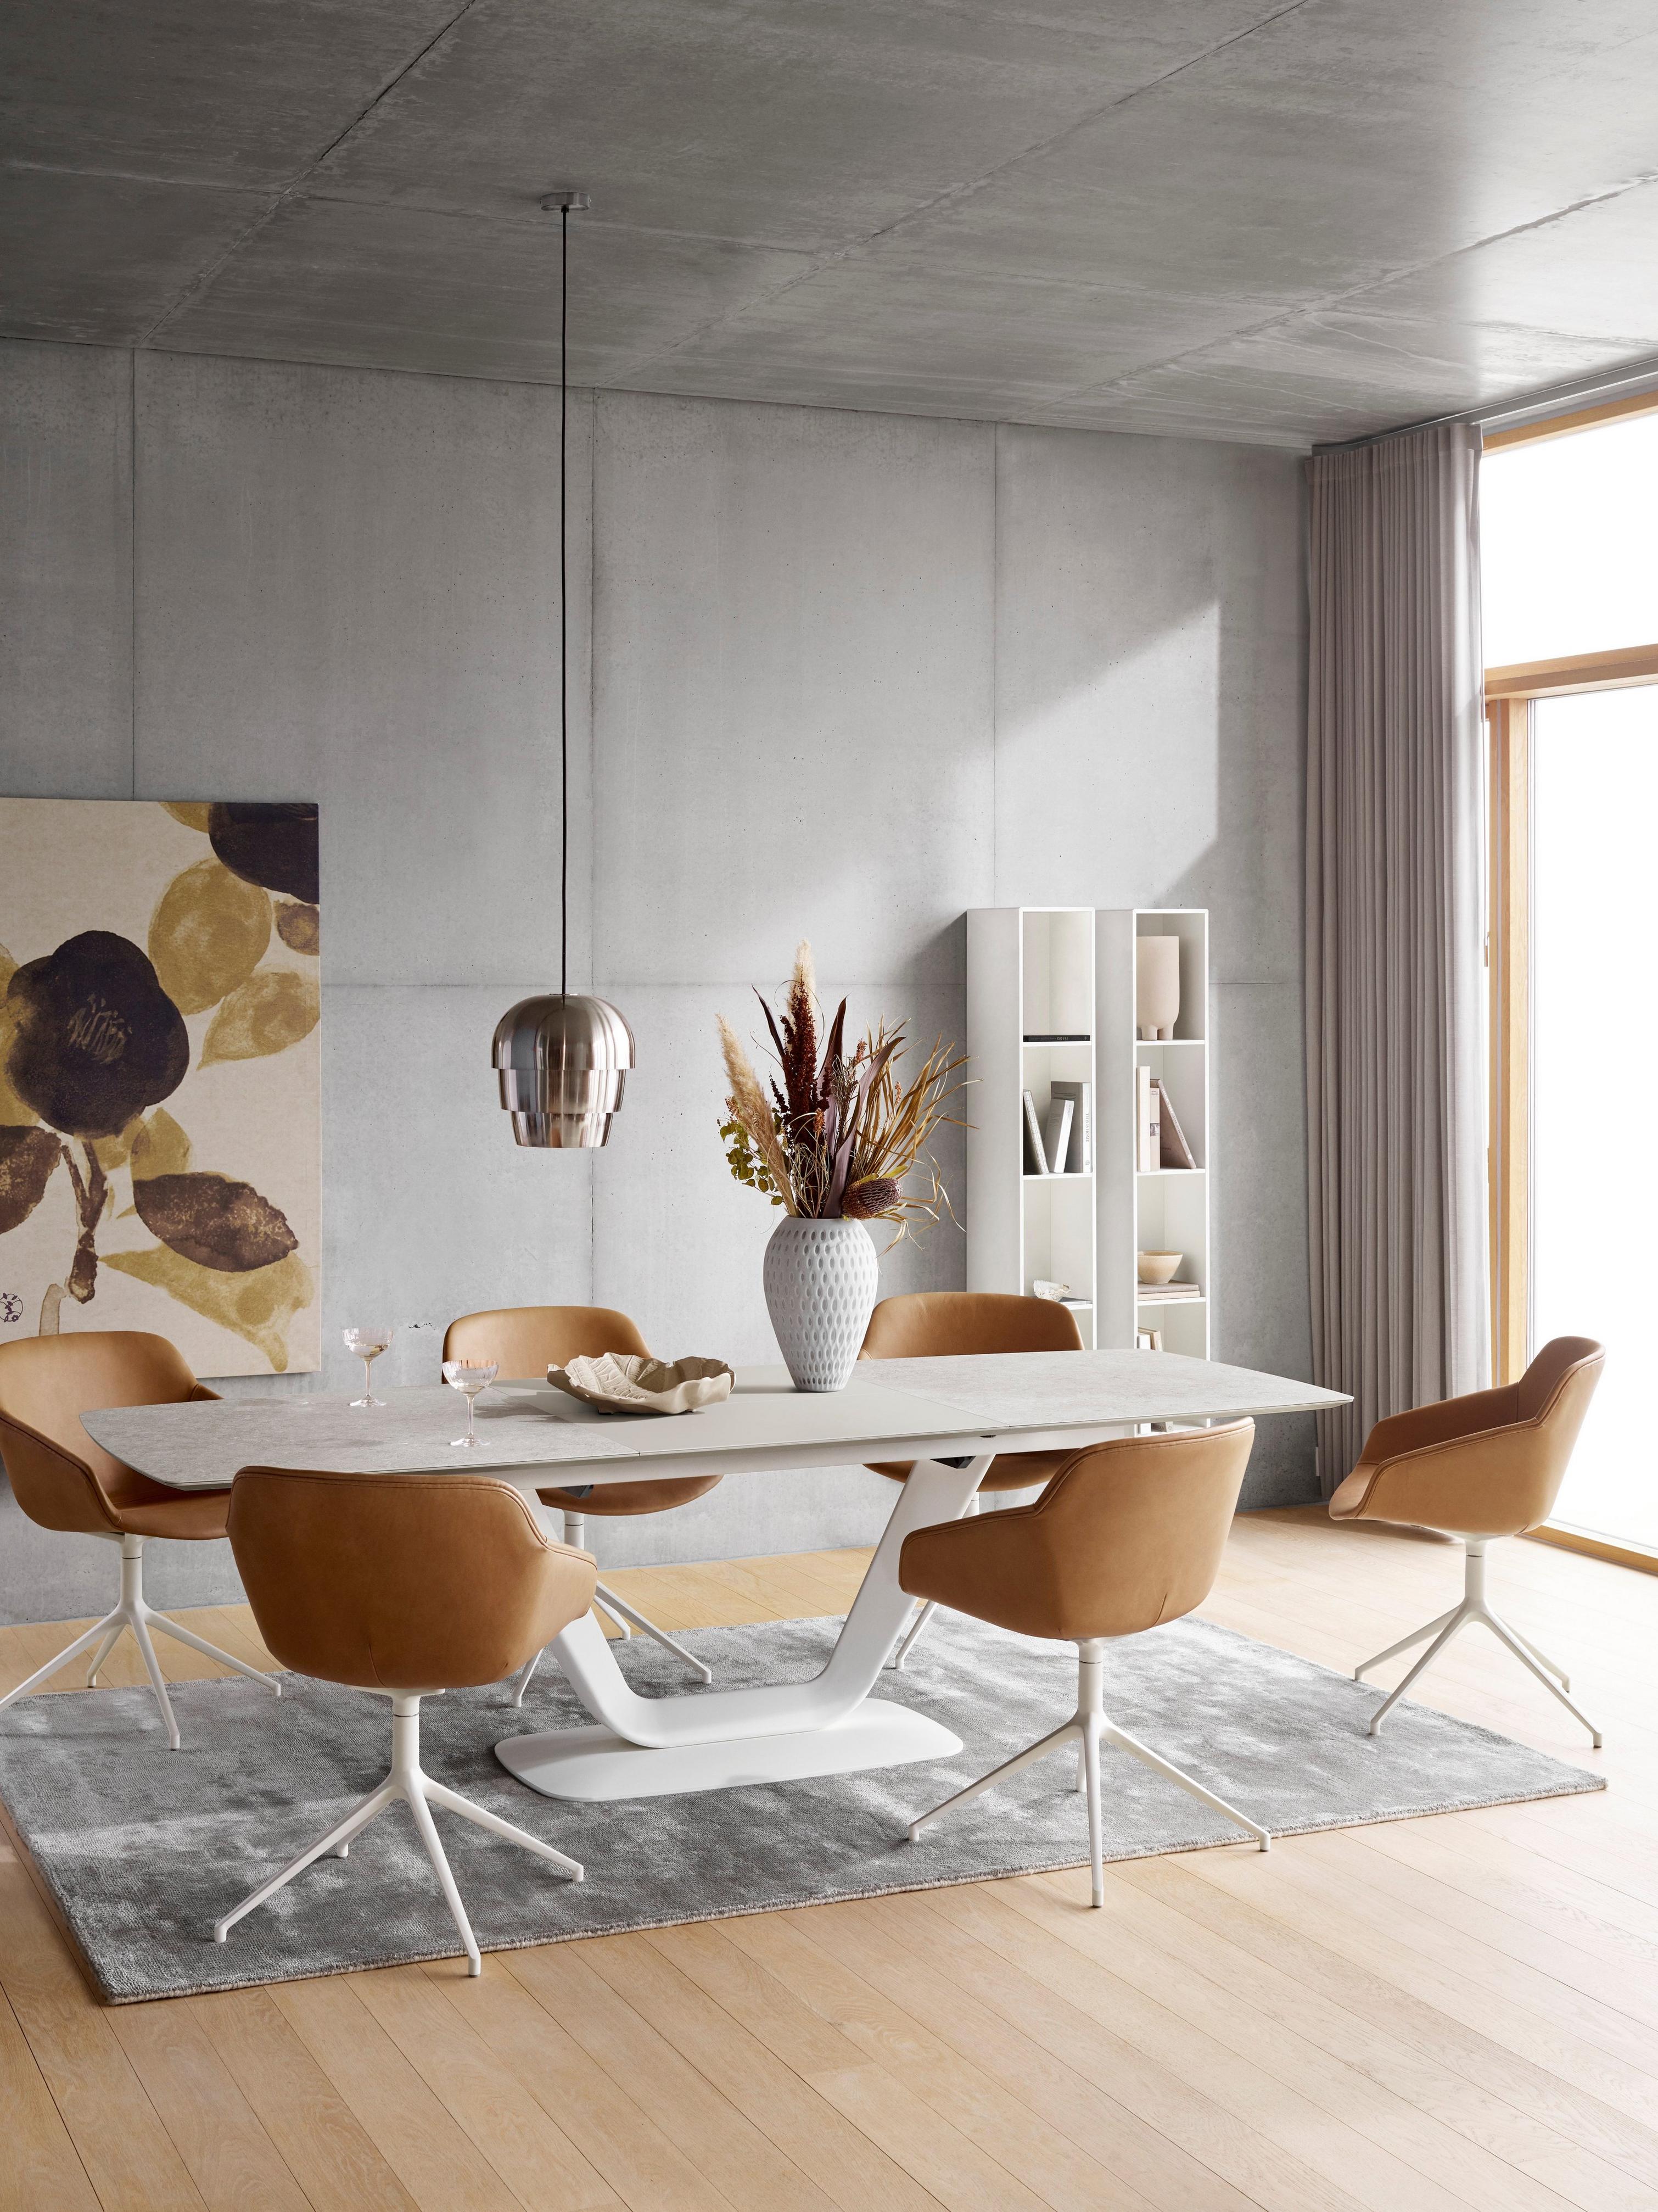 Eetkamer met bruine stoelen, witte tafel, hanglamp en grijs karpet, met kunst en planken.